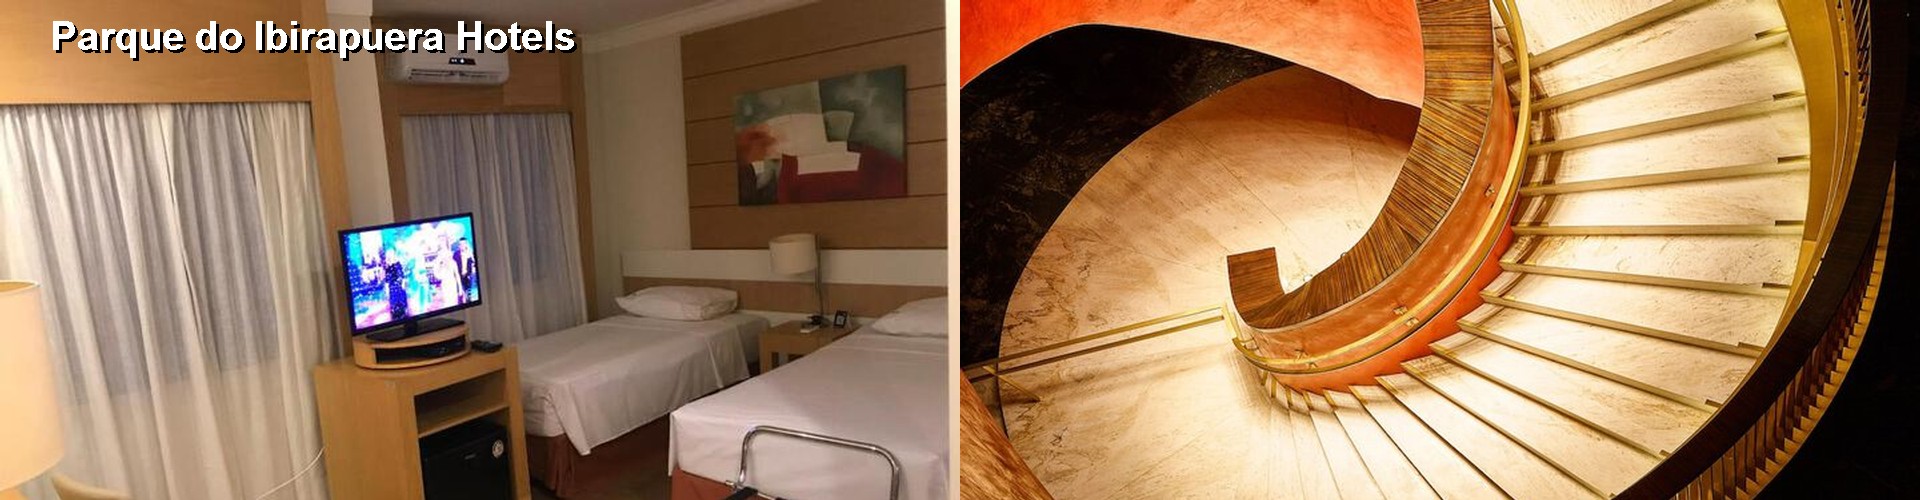 5 Best Hotels near Parque do Ibirapuera